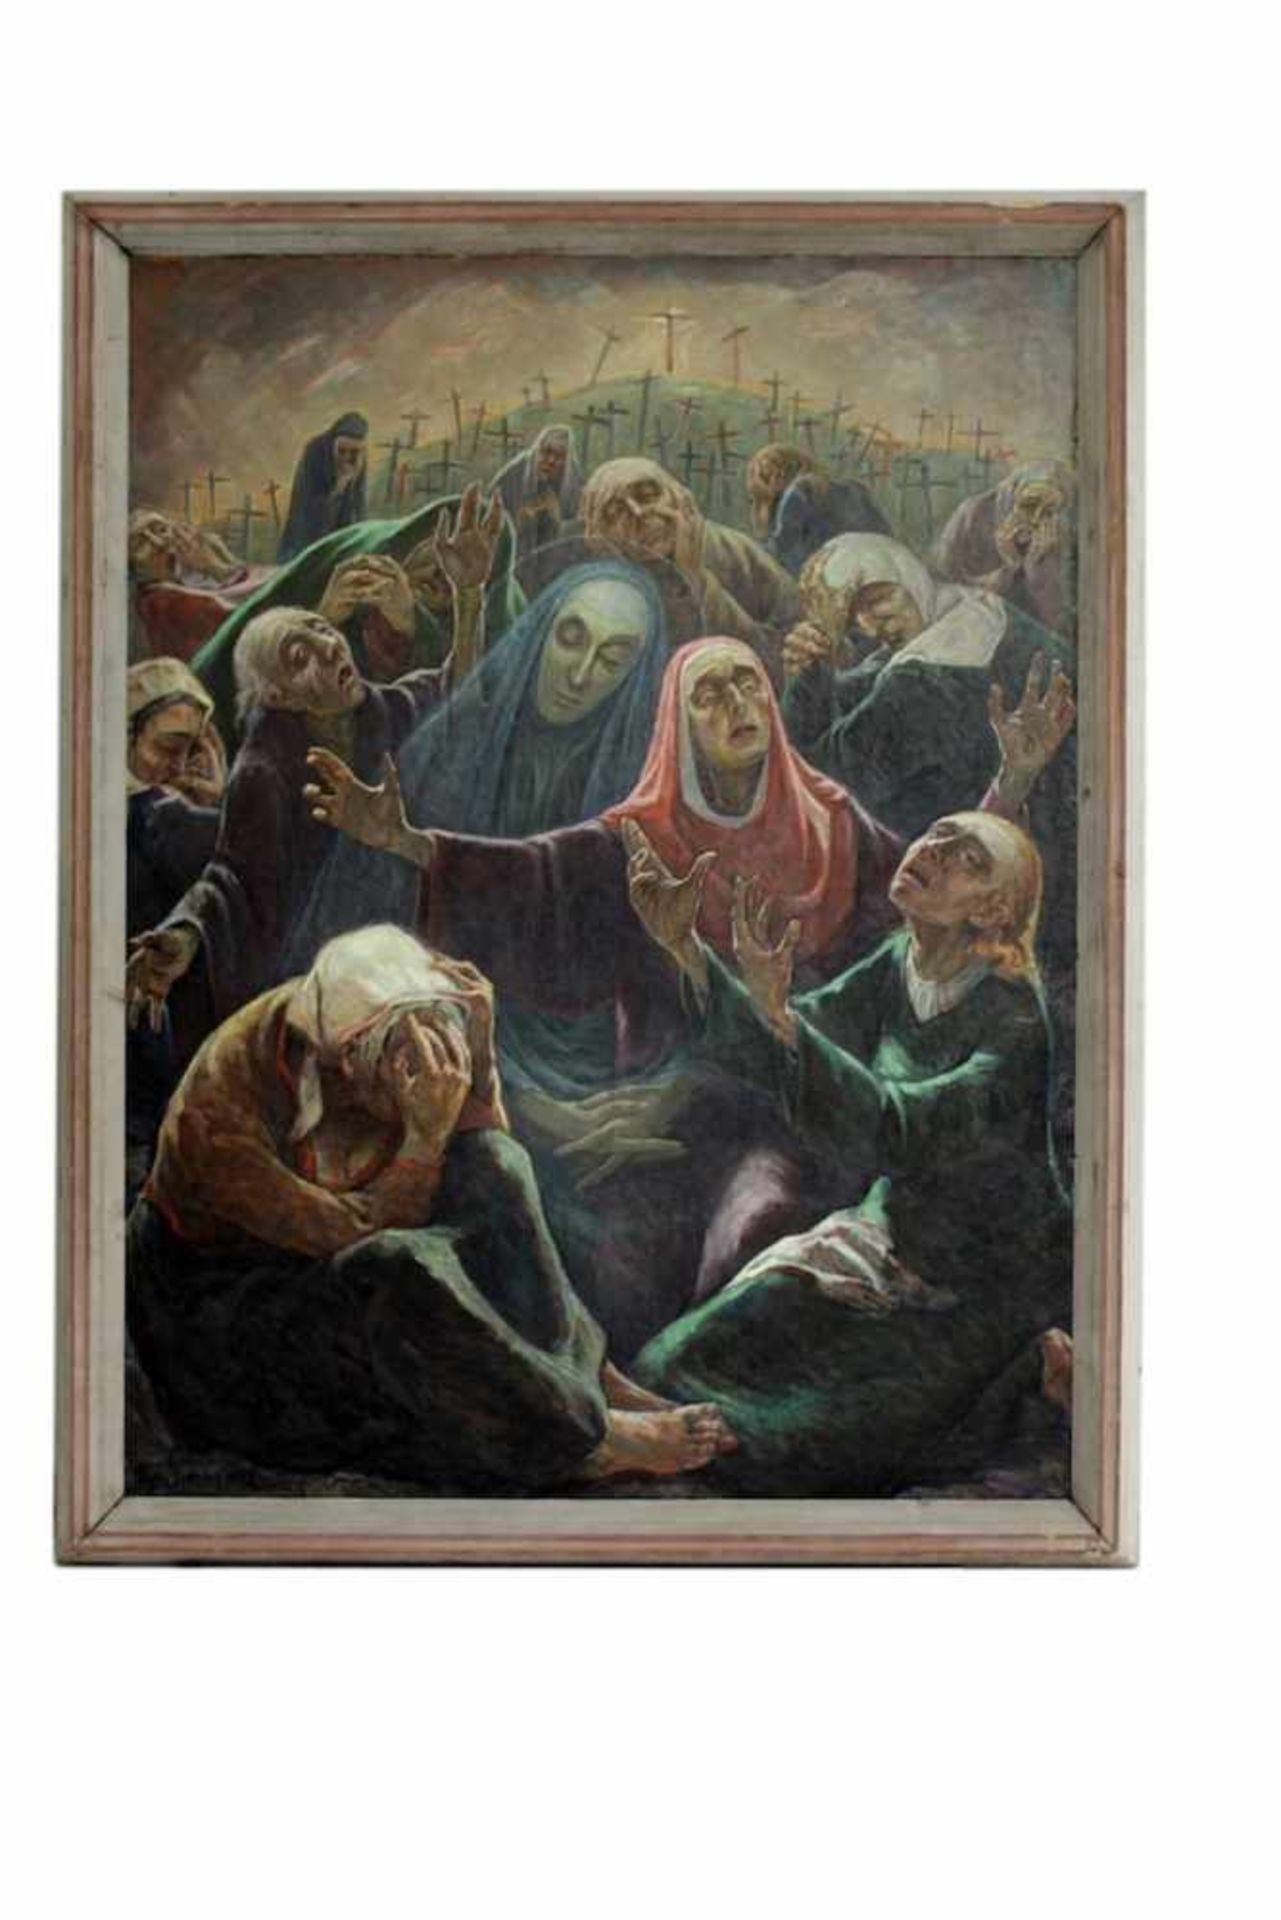 TRAUERNDE FRAUEN Trauernde Frauen, Hans Simmerl (1897 - 1965), Öl auf Leinwand, 192 x 146 cm, in